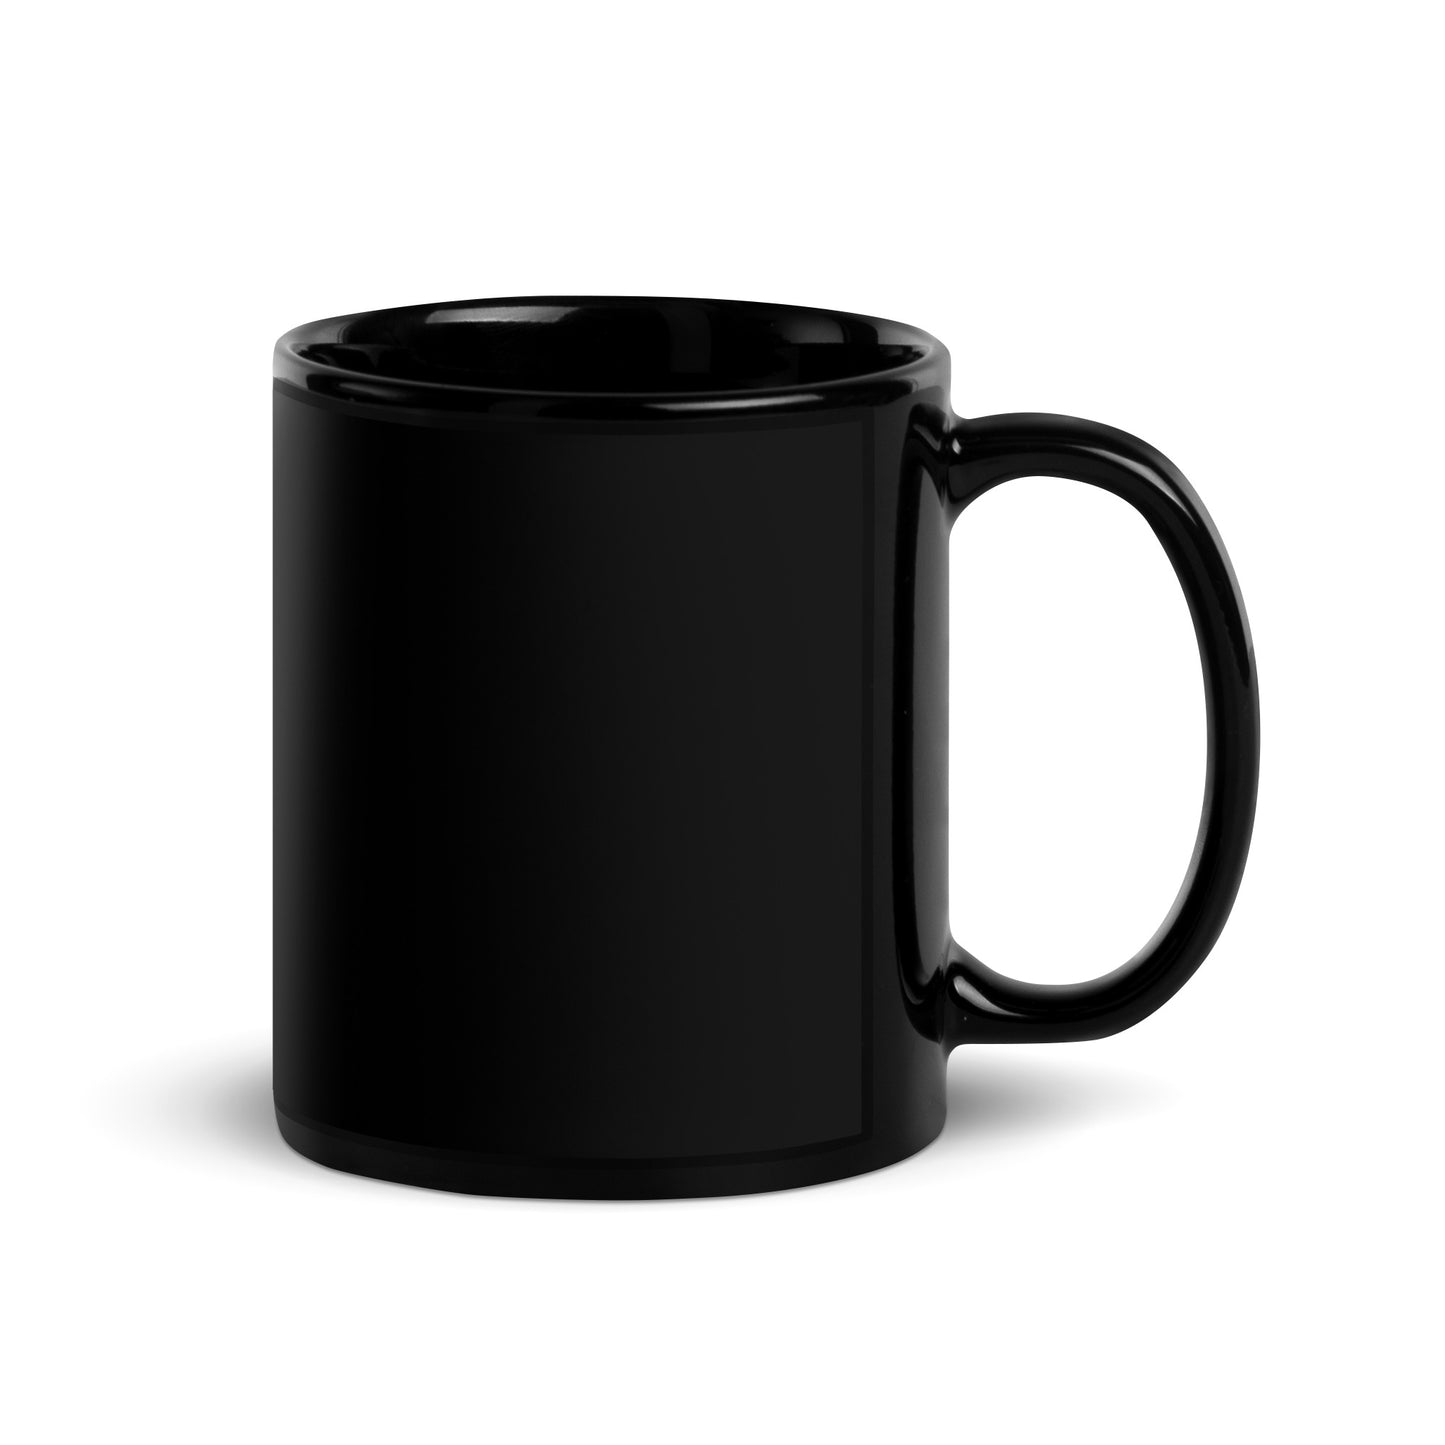 The Randall Series Warning Black Glossy Mug